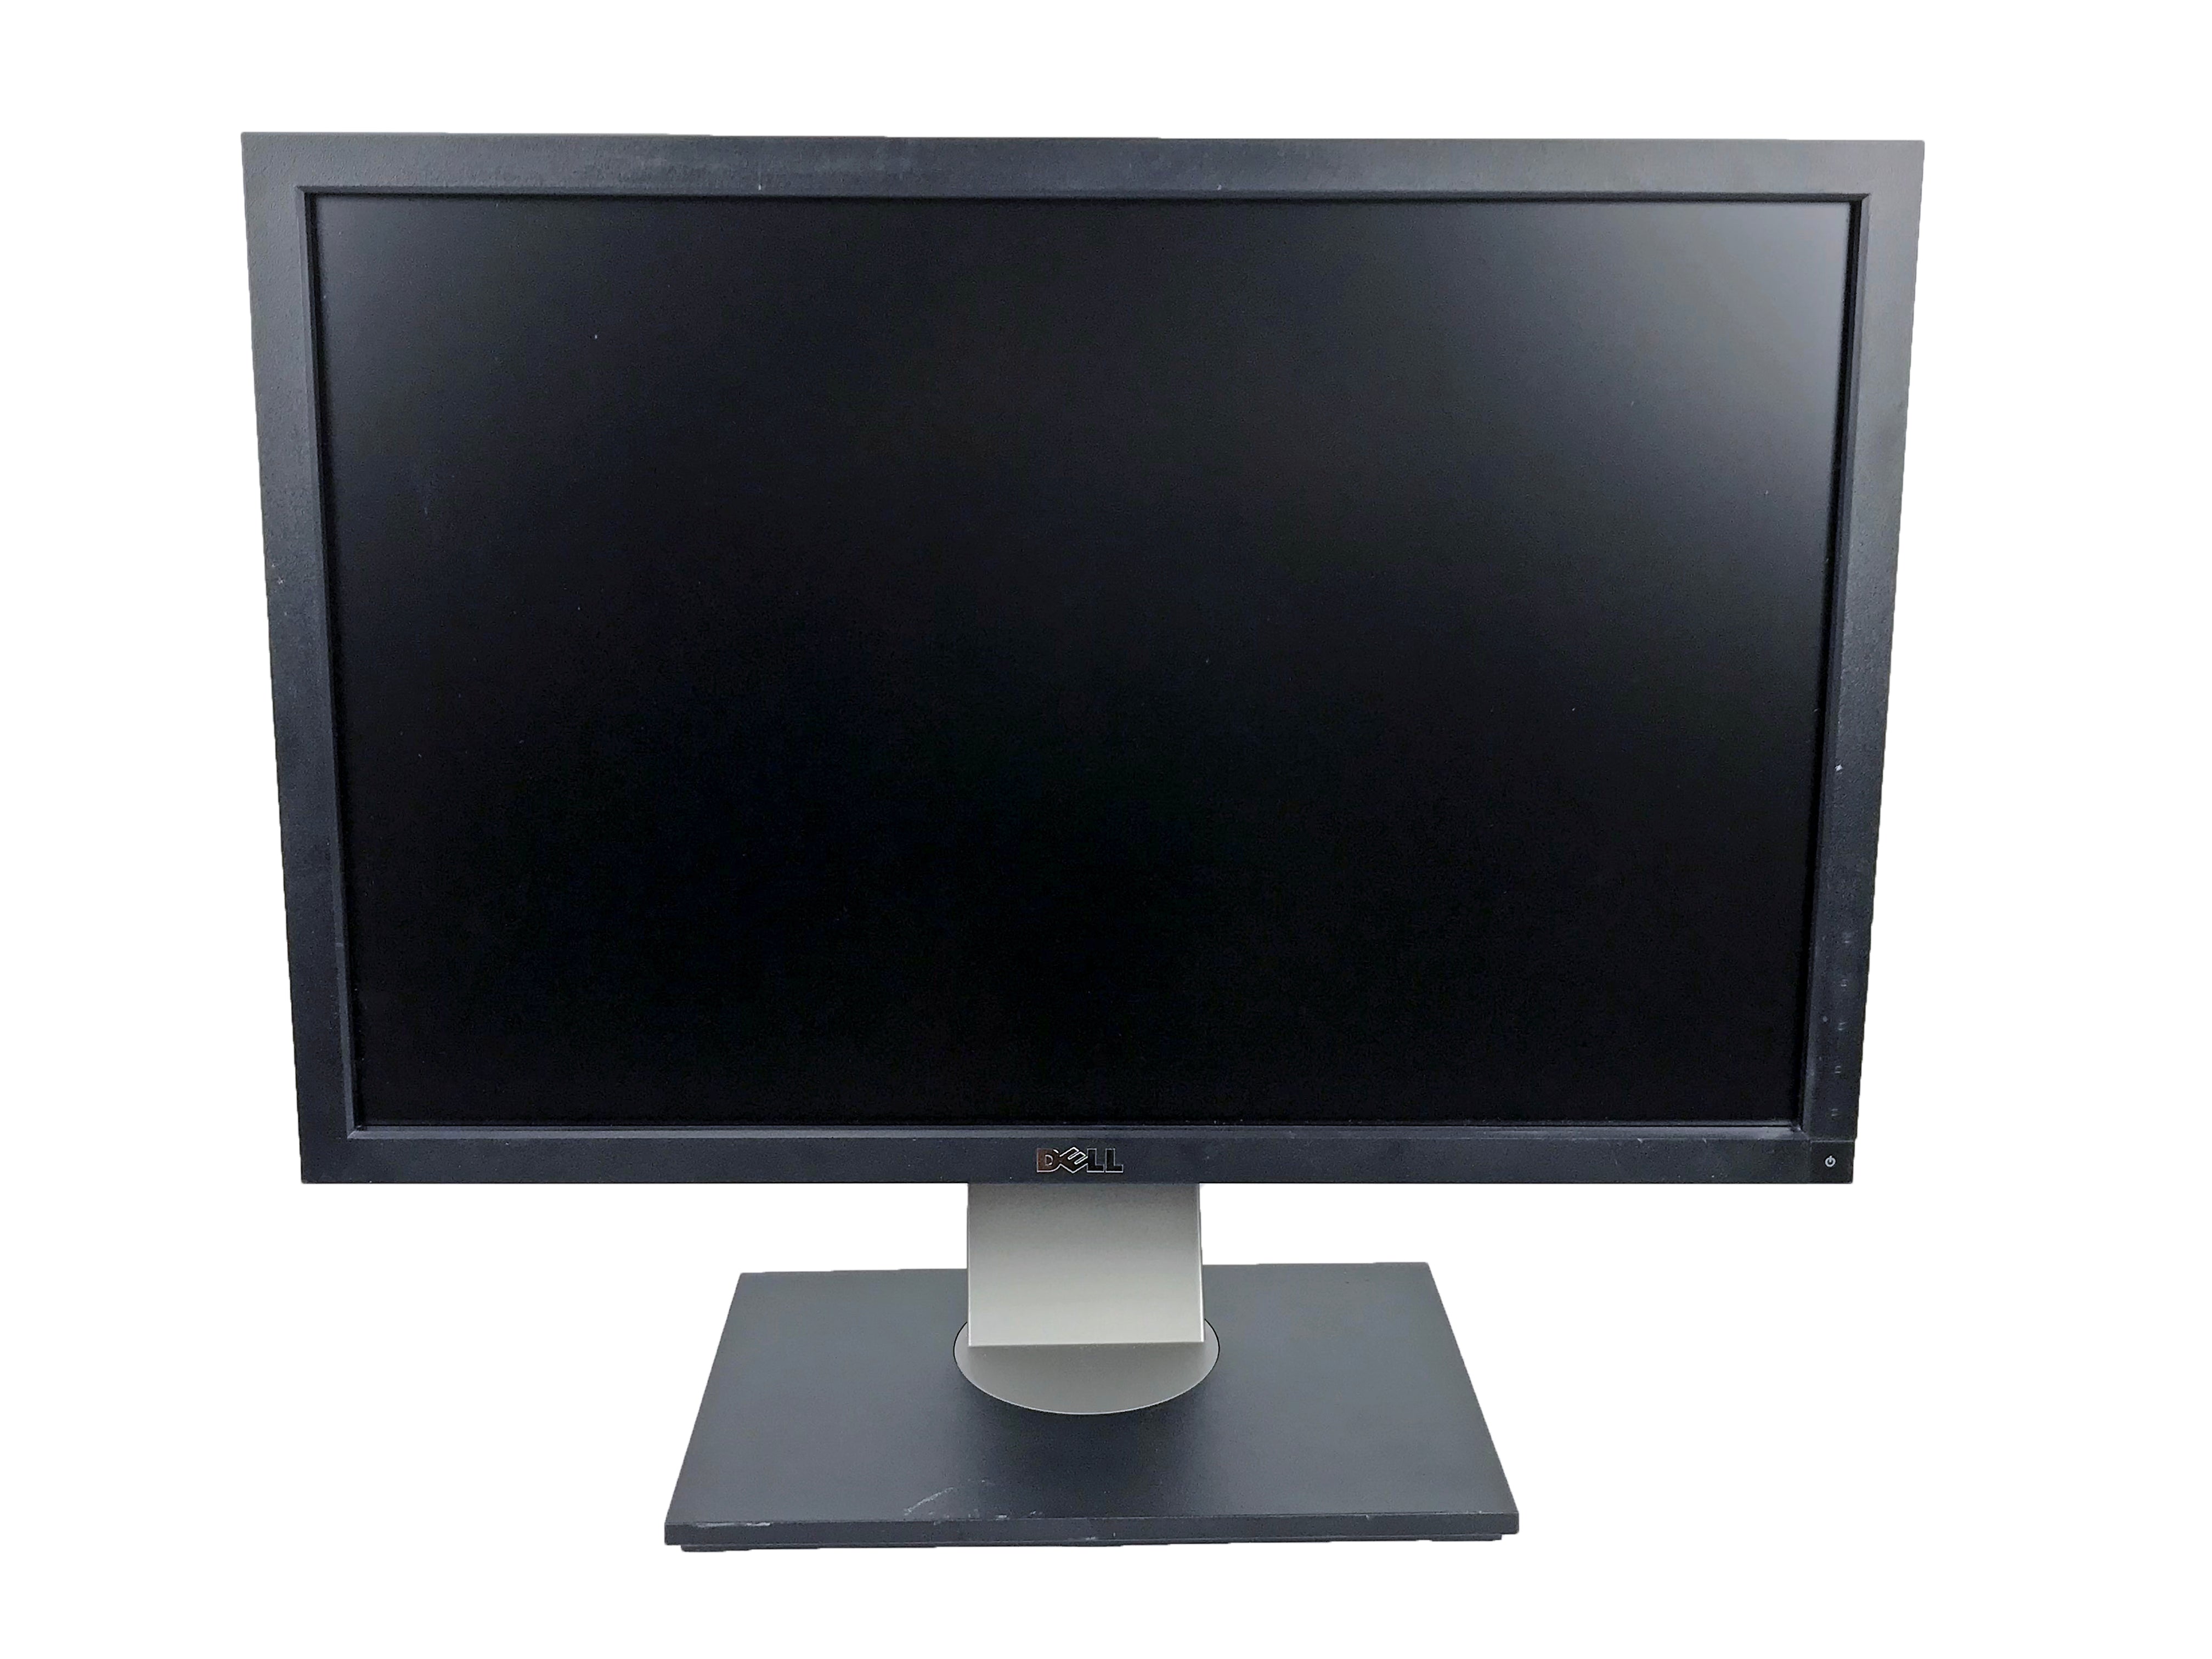 Dell U2410f 24" Widescreen LCD Monitor